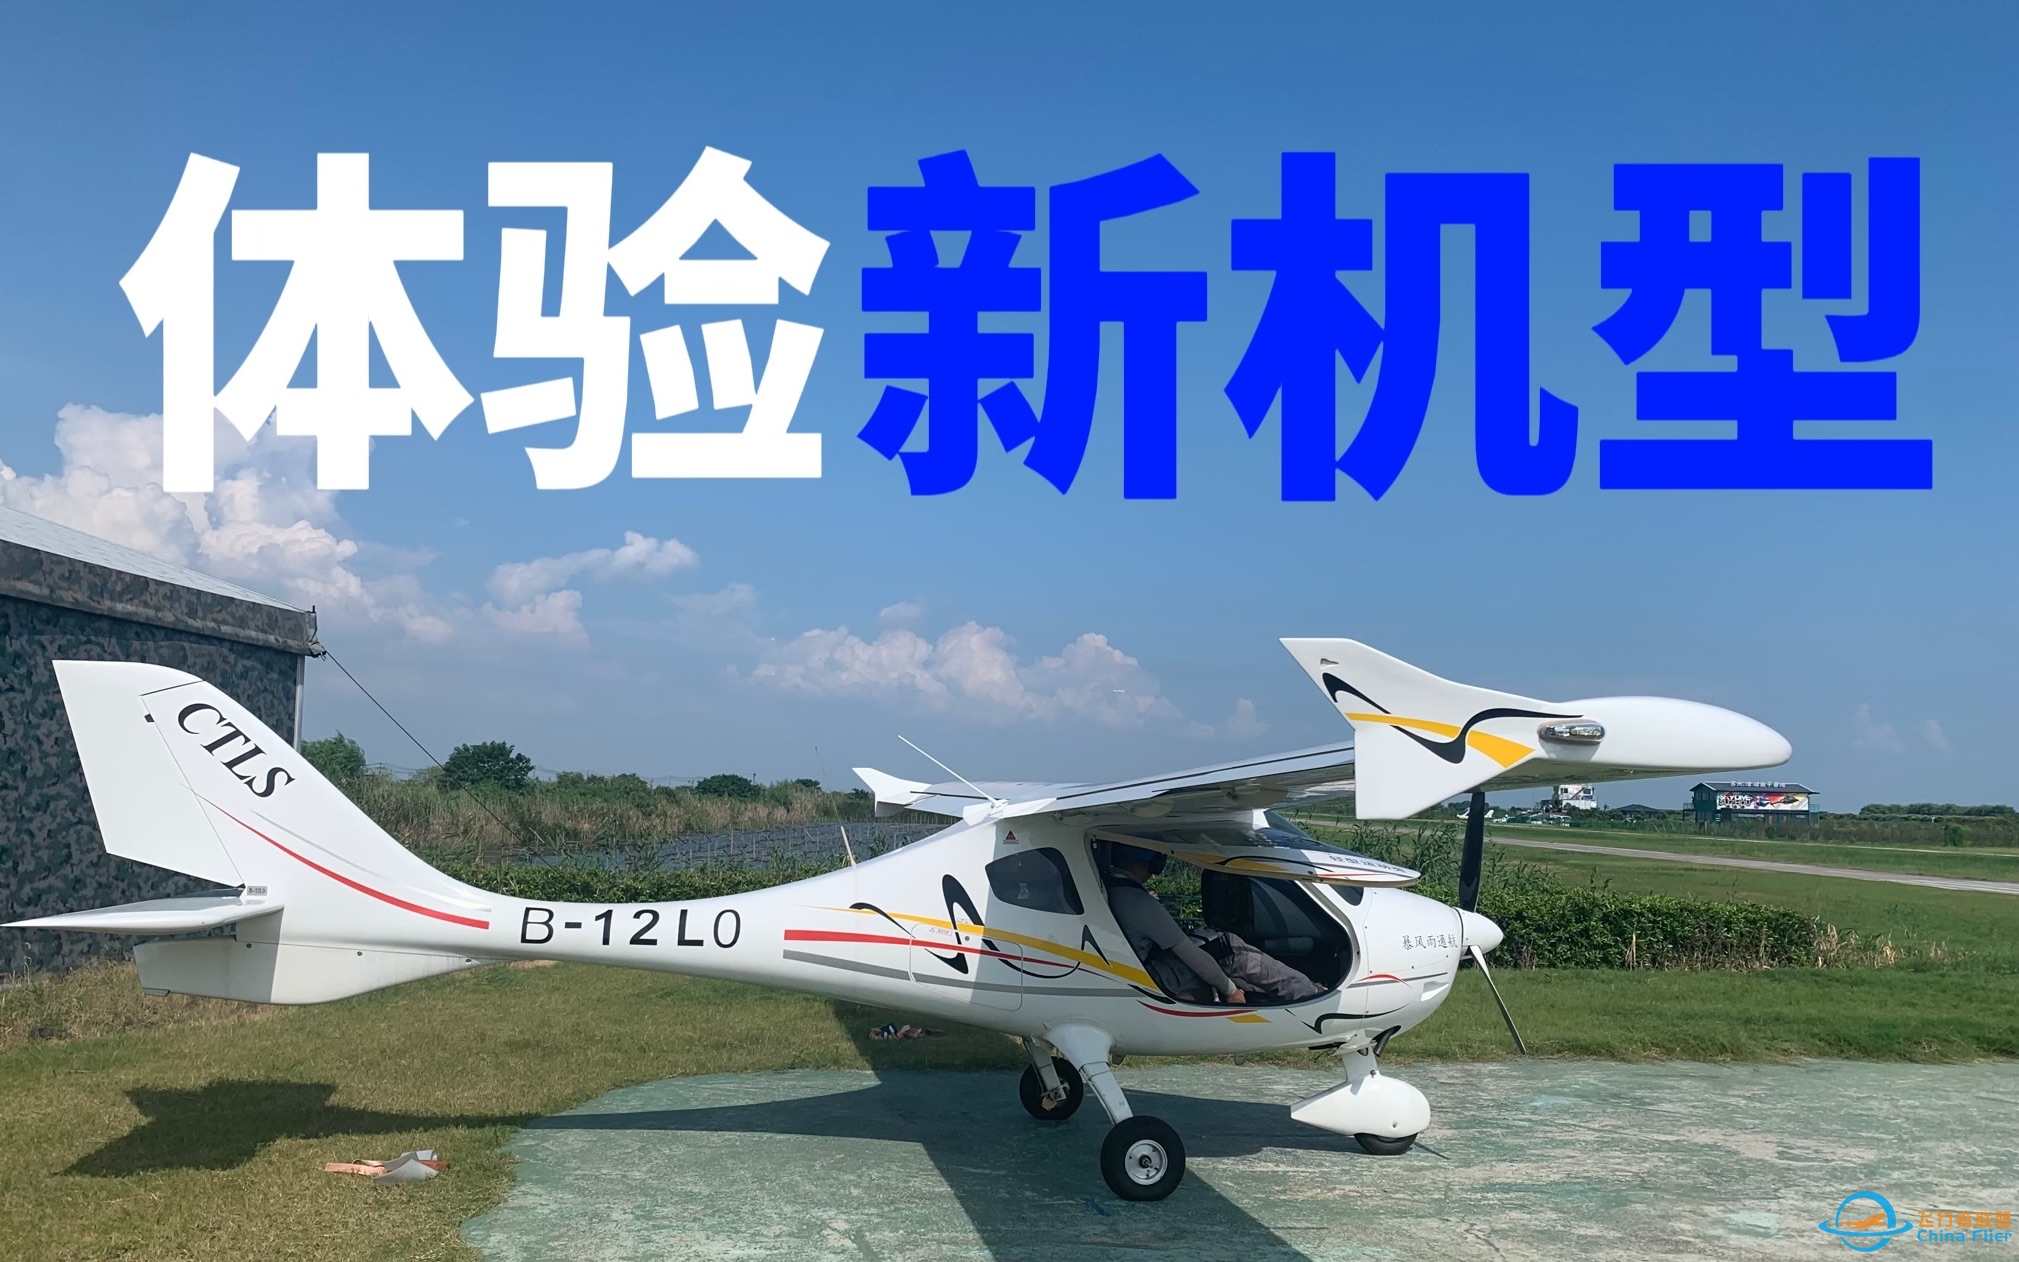 【体验飞行】初中生飞友首次体验驾驶CTLS飞机｜新的机型新的挑战-2501 